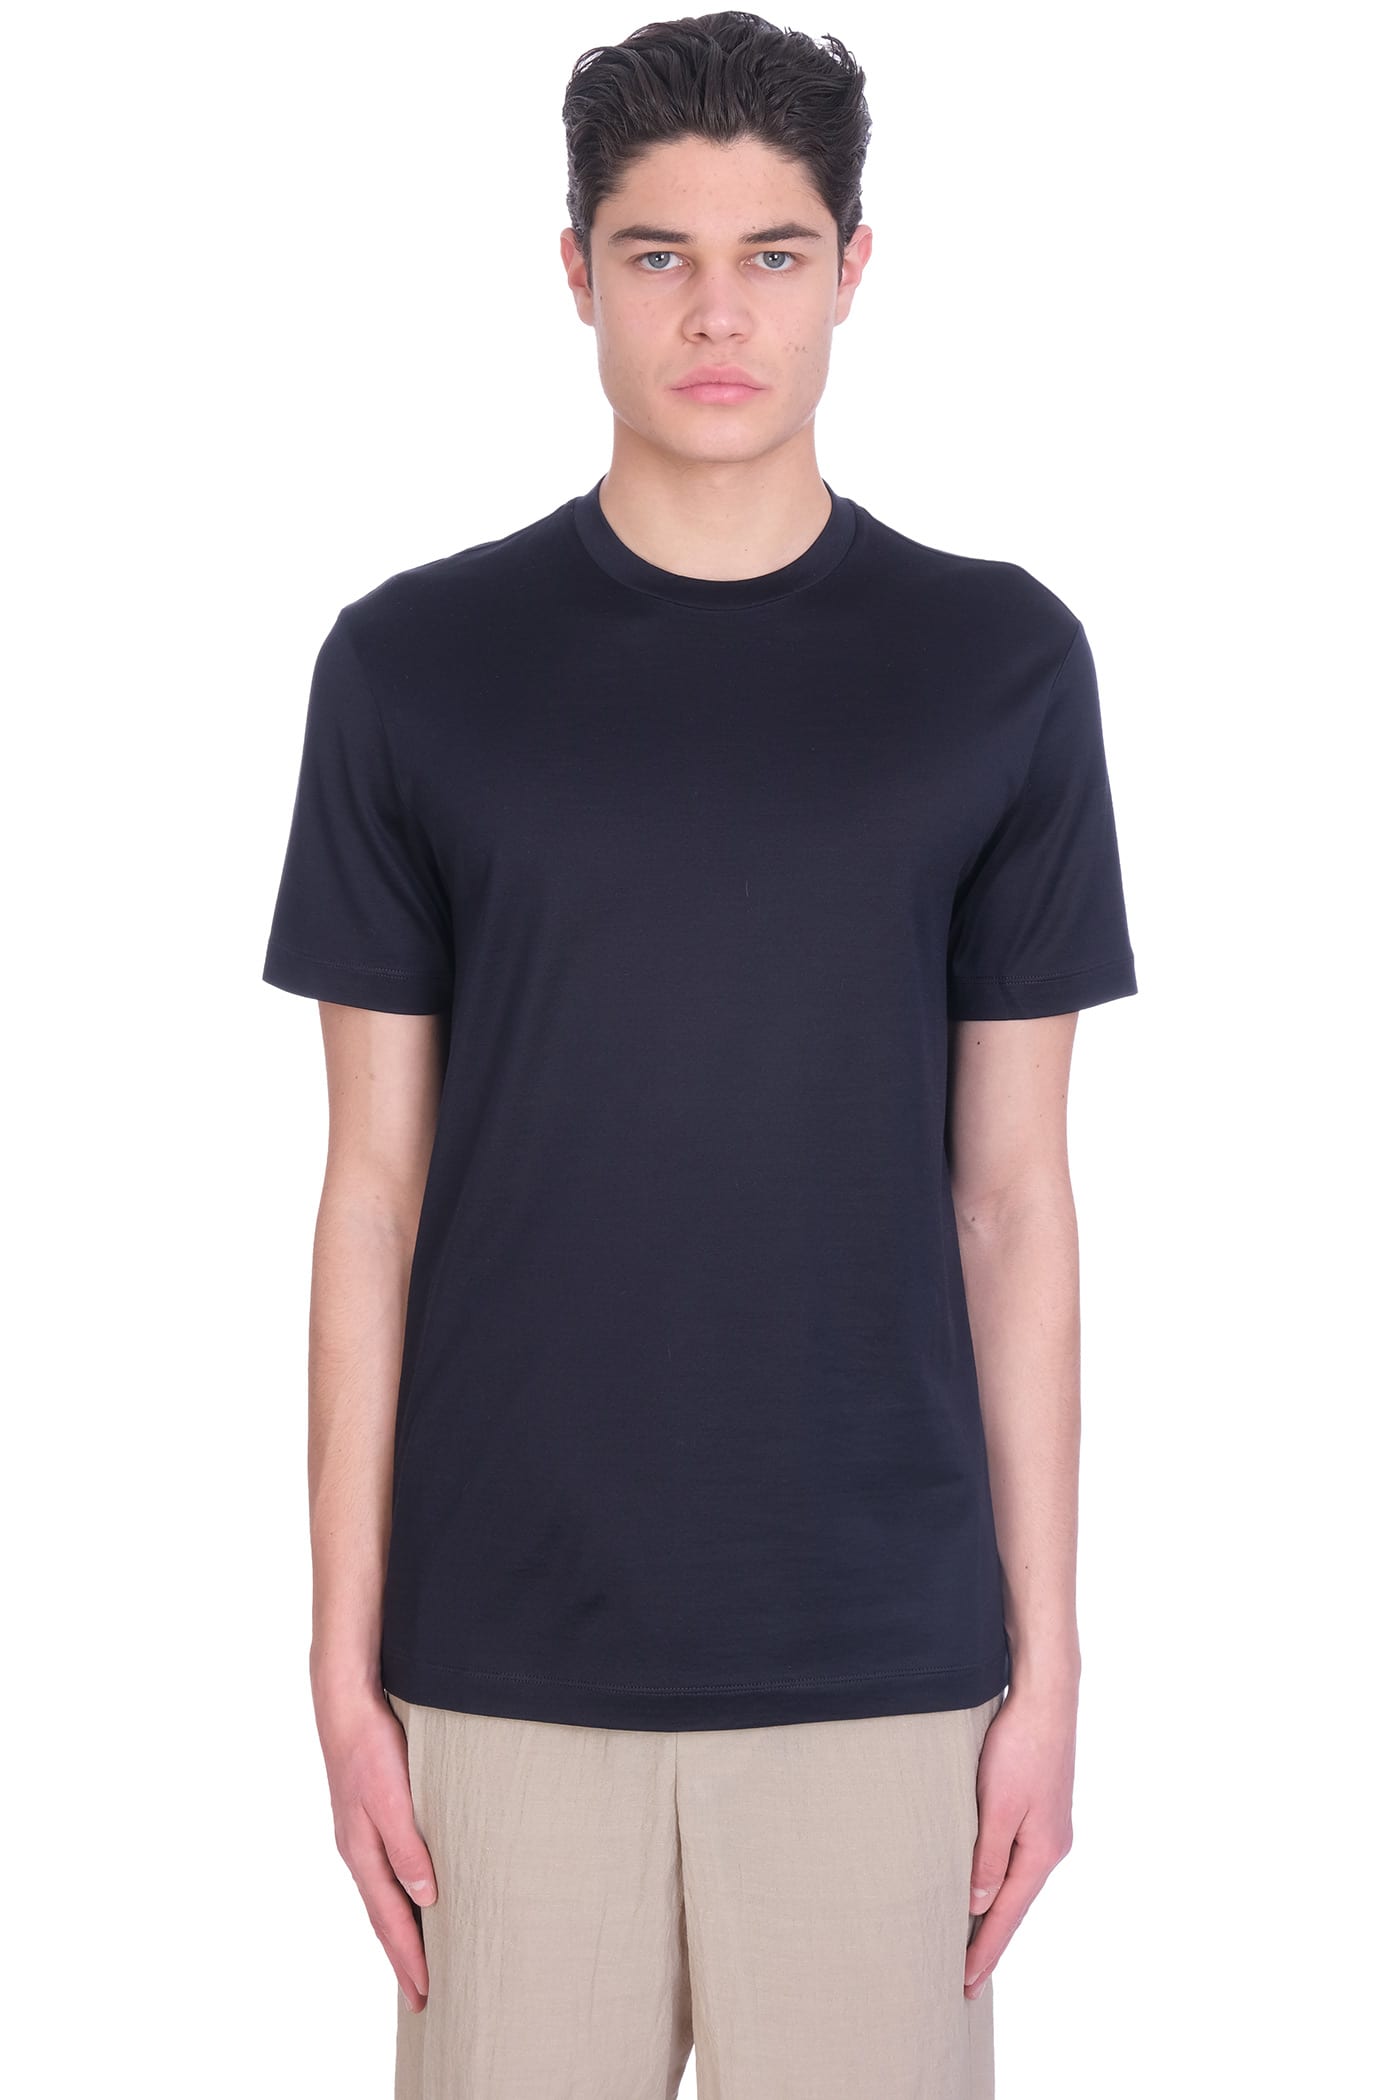 Giorgio Armani T-shirt In Blue Cotton